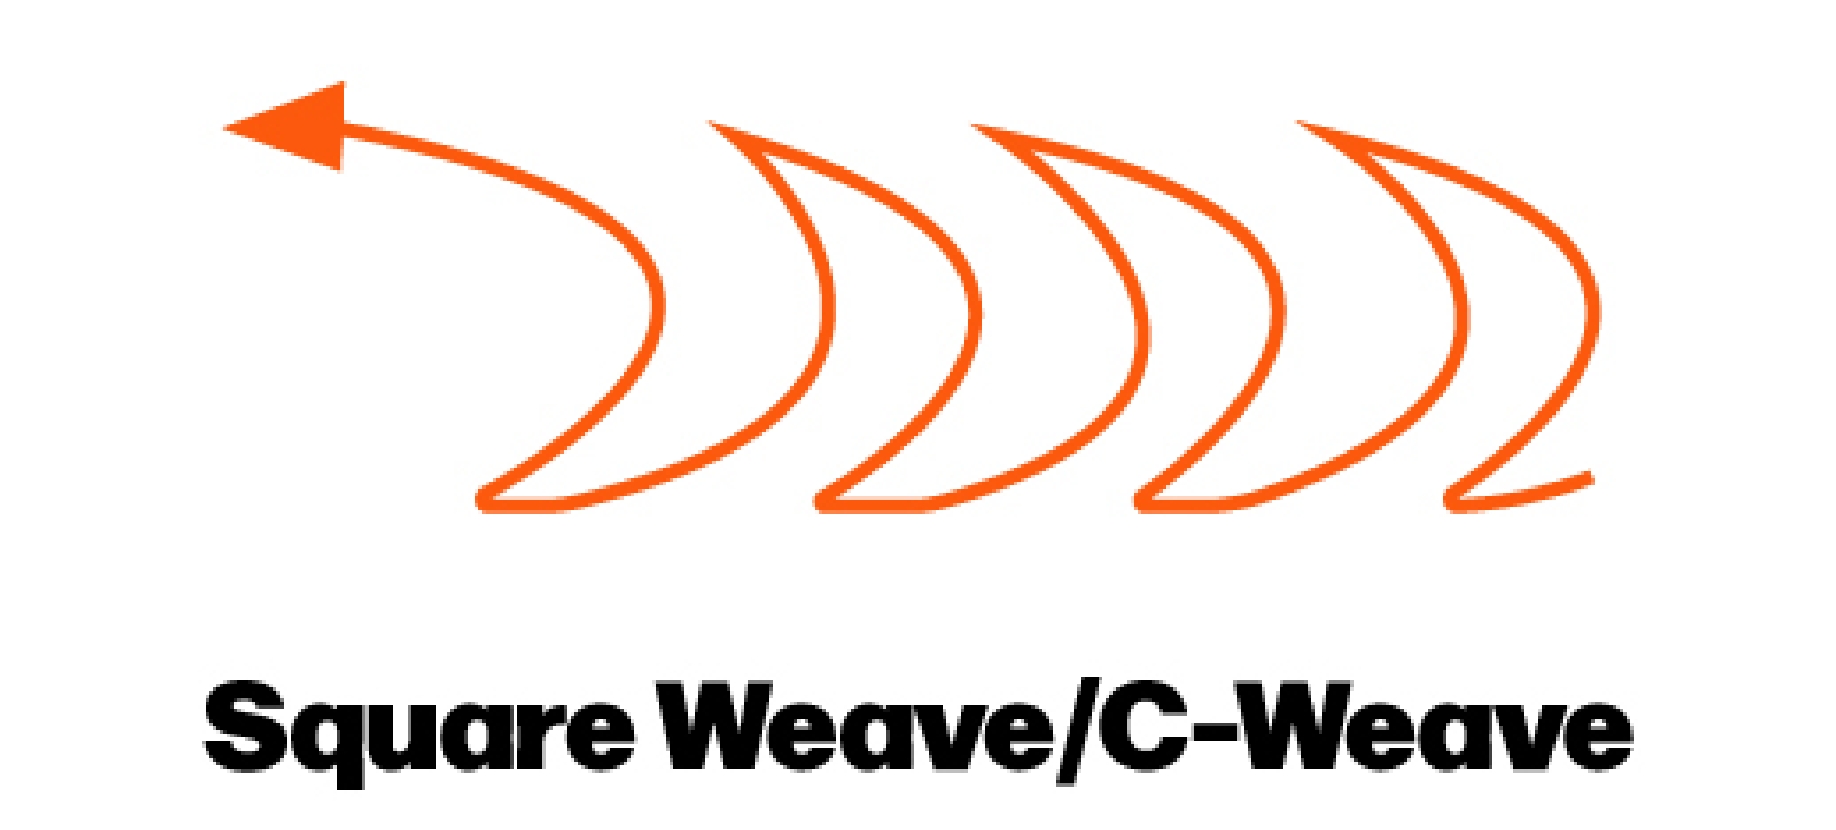 Square Weave Graphic